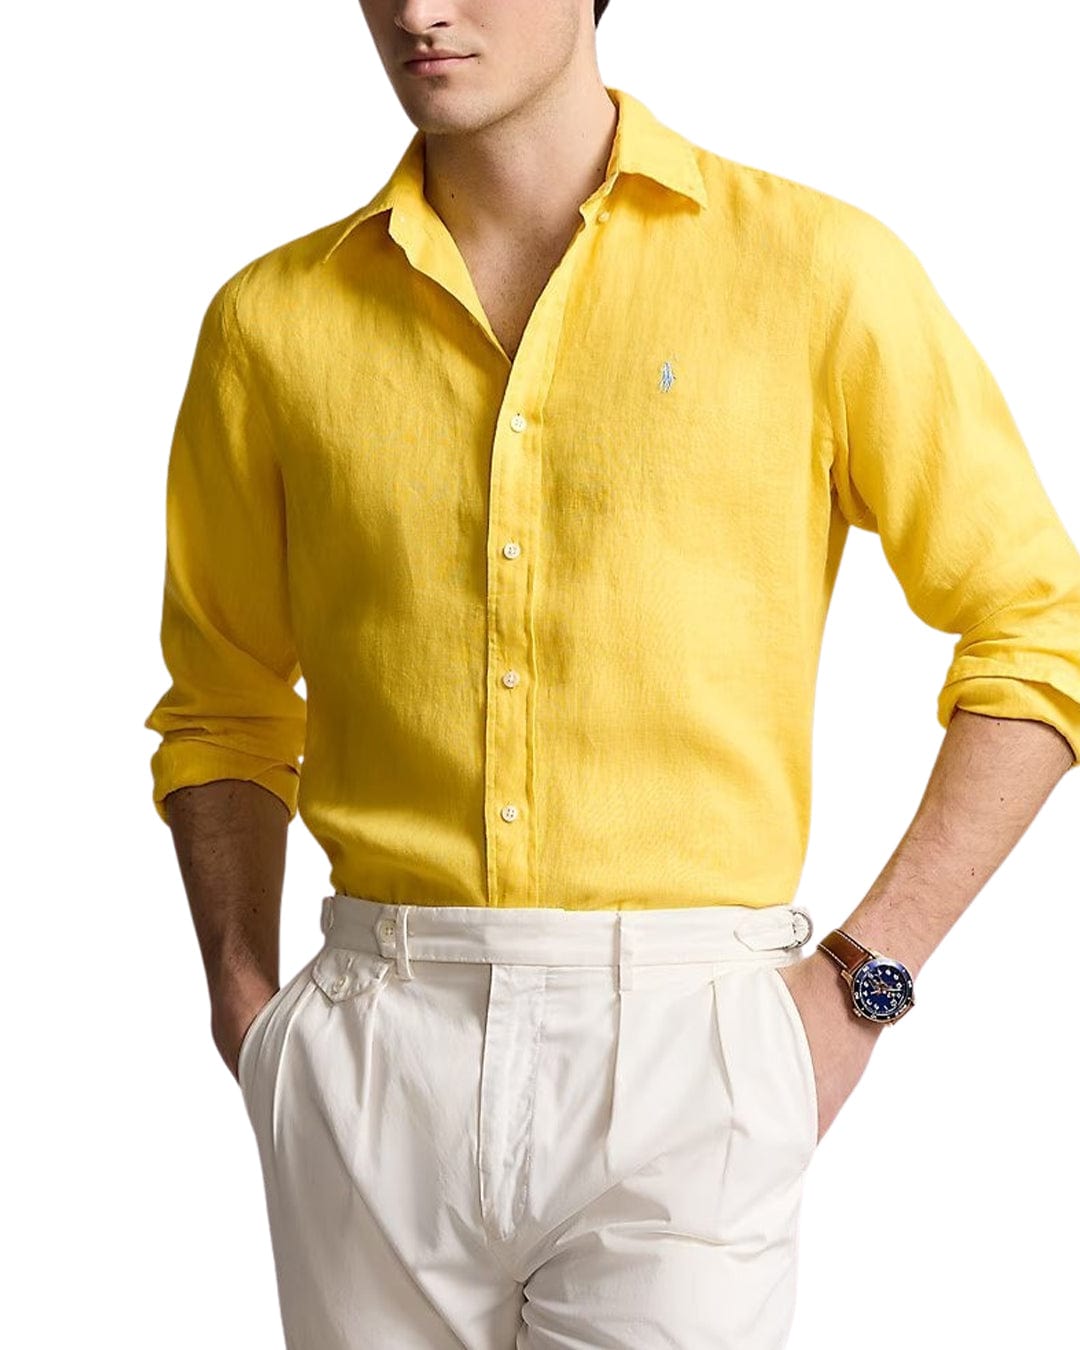 Polo Ralph Lauren Shirts Polo Ralph Lauren Yellow Custom Fit Linen Shirt